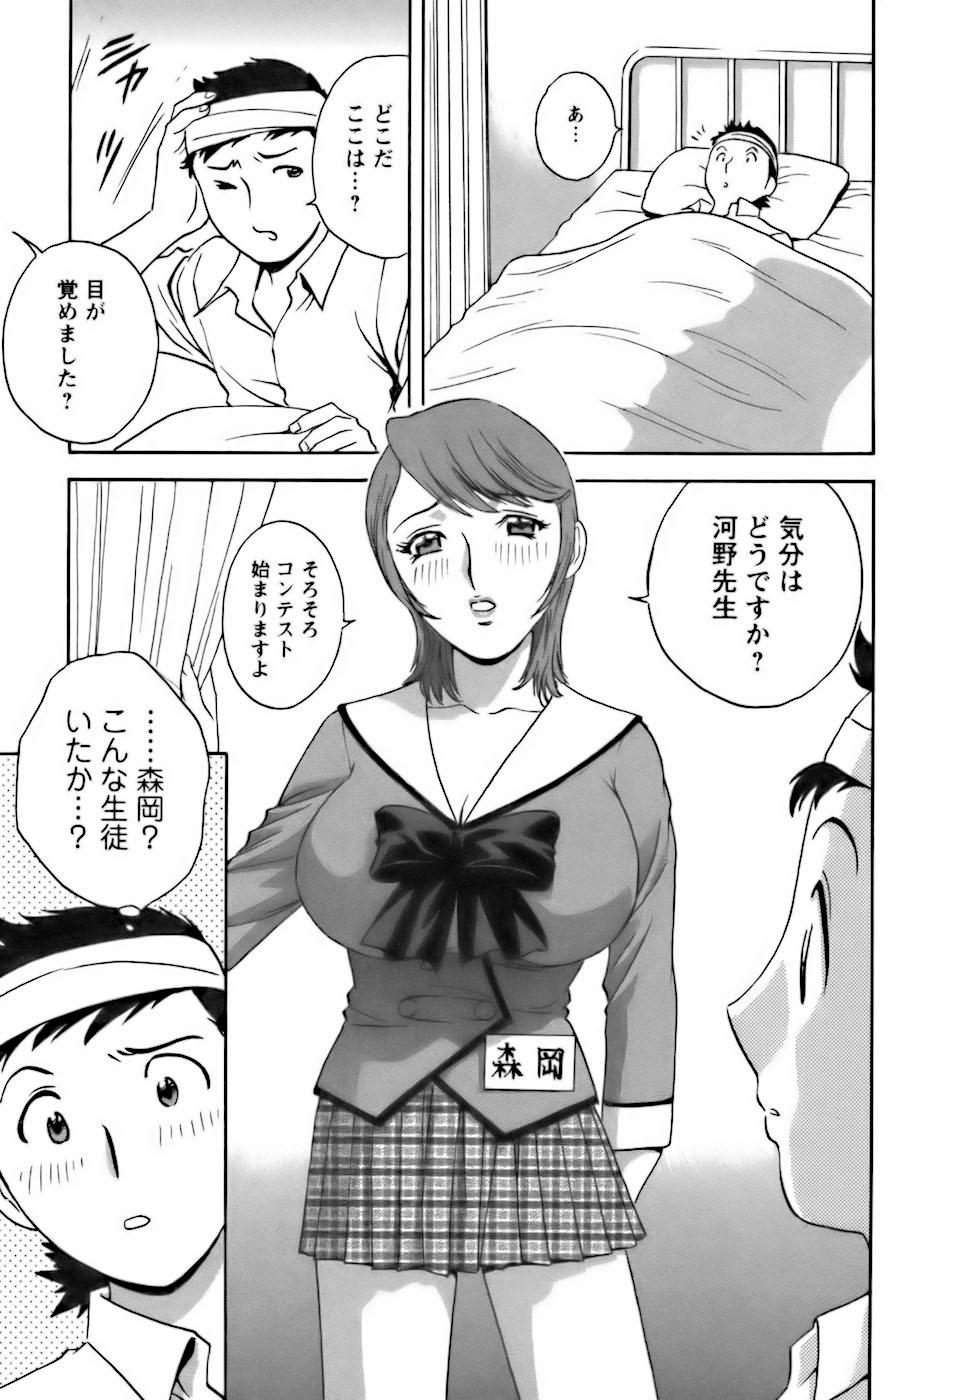 [Hidemaru] Mo-Retsu! Boin Sensei (Boing Boing Teacher) Vol.3 114